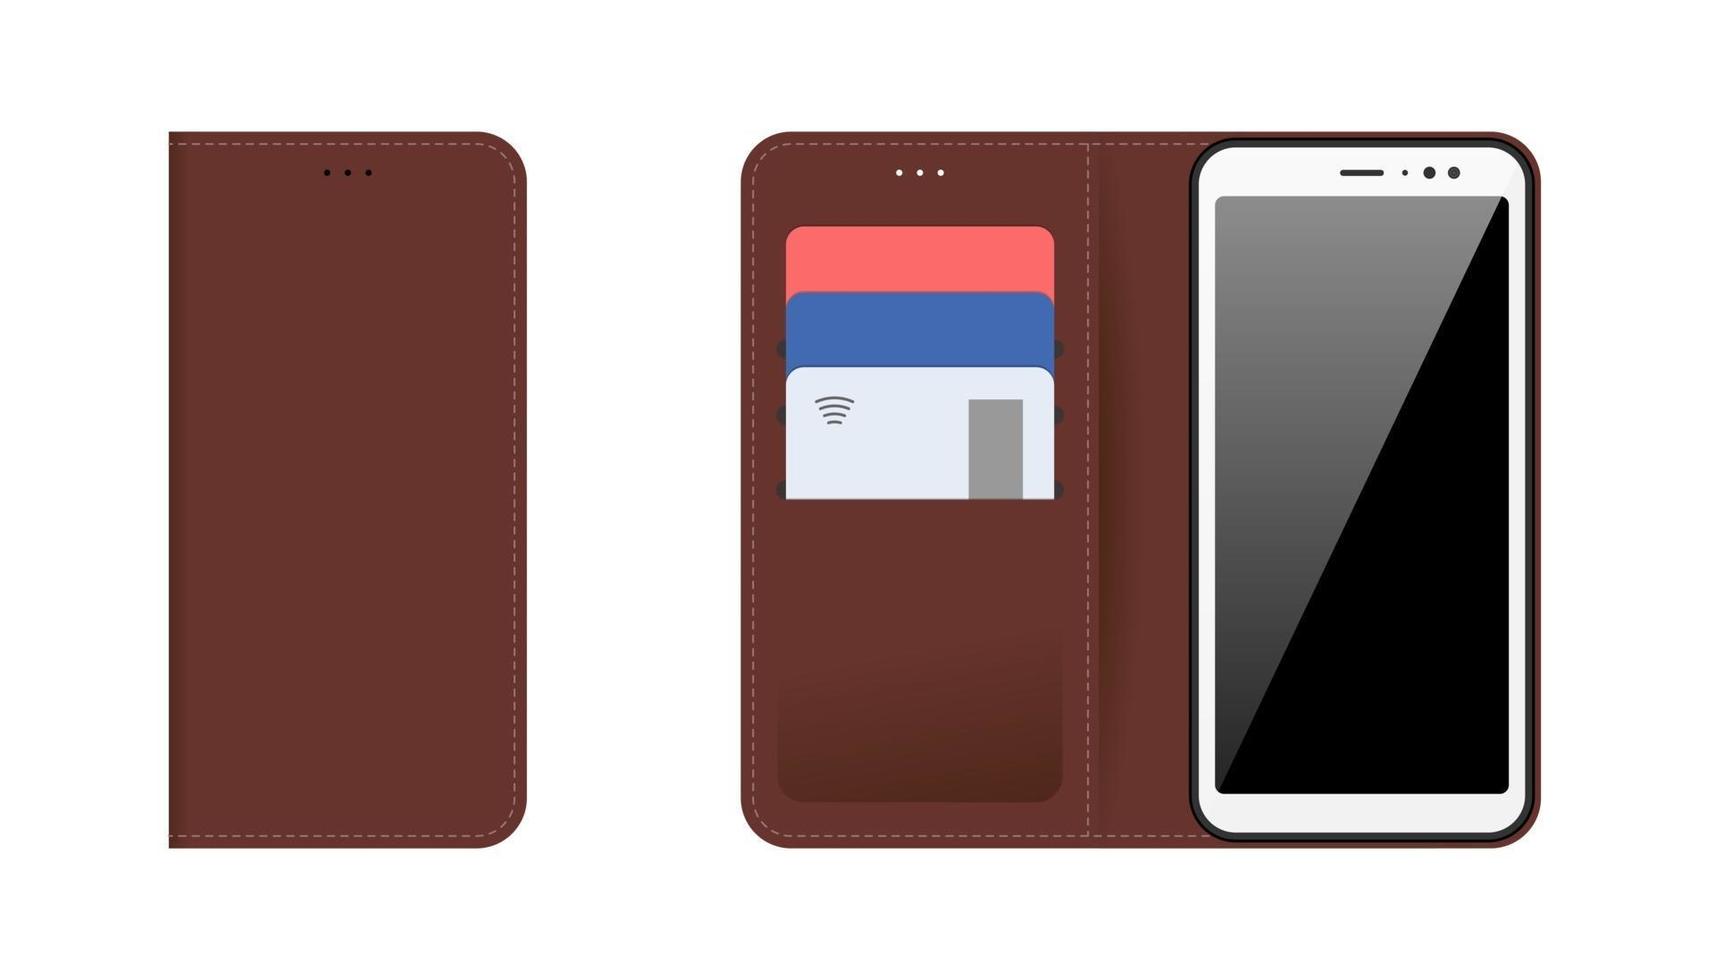 smartphone pour appareil mobile avec étui en cuir cousu marron ouvert et fermé, cartes bancaires en plastique dans les poches. ensemble d'isolement d'illustration plat moderne de vecteur